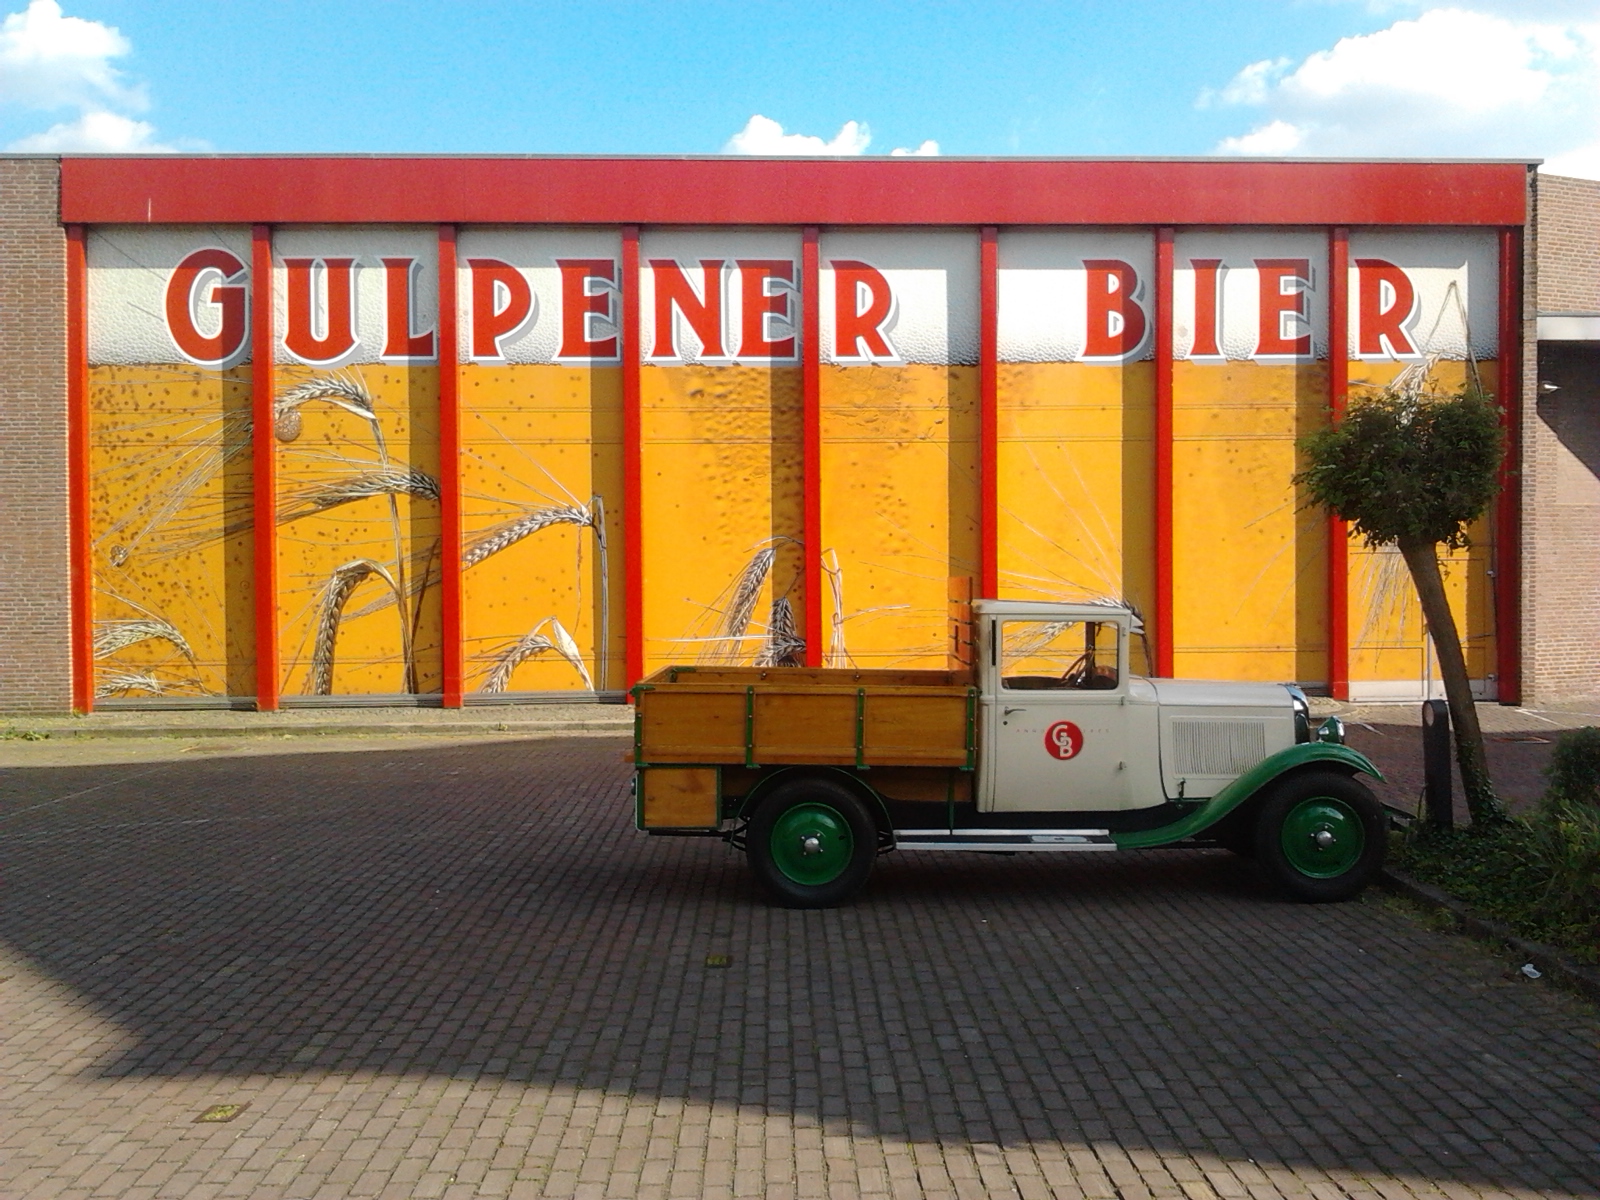 Gulpener, birrificio olandese basato sui principi della produzione artigianale con grande riguardo alle tecnologie innovative